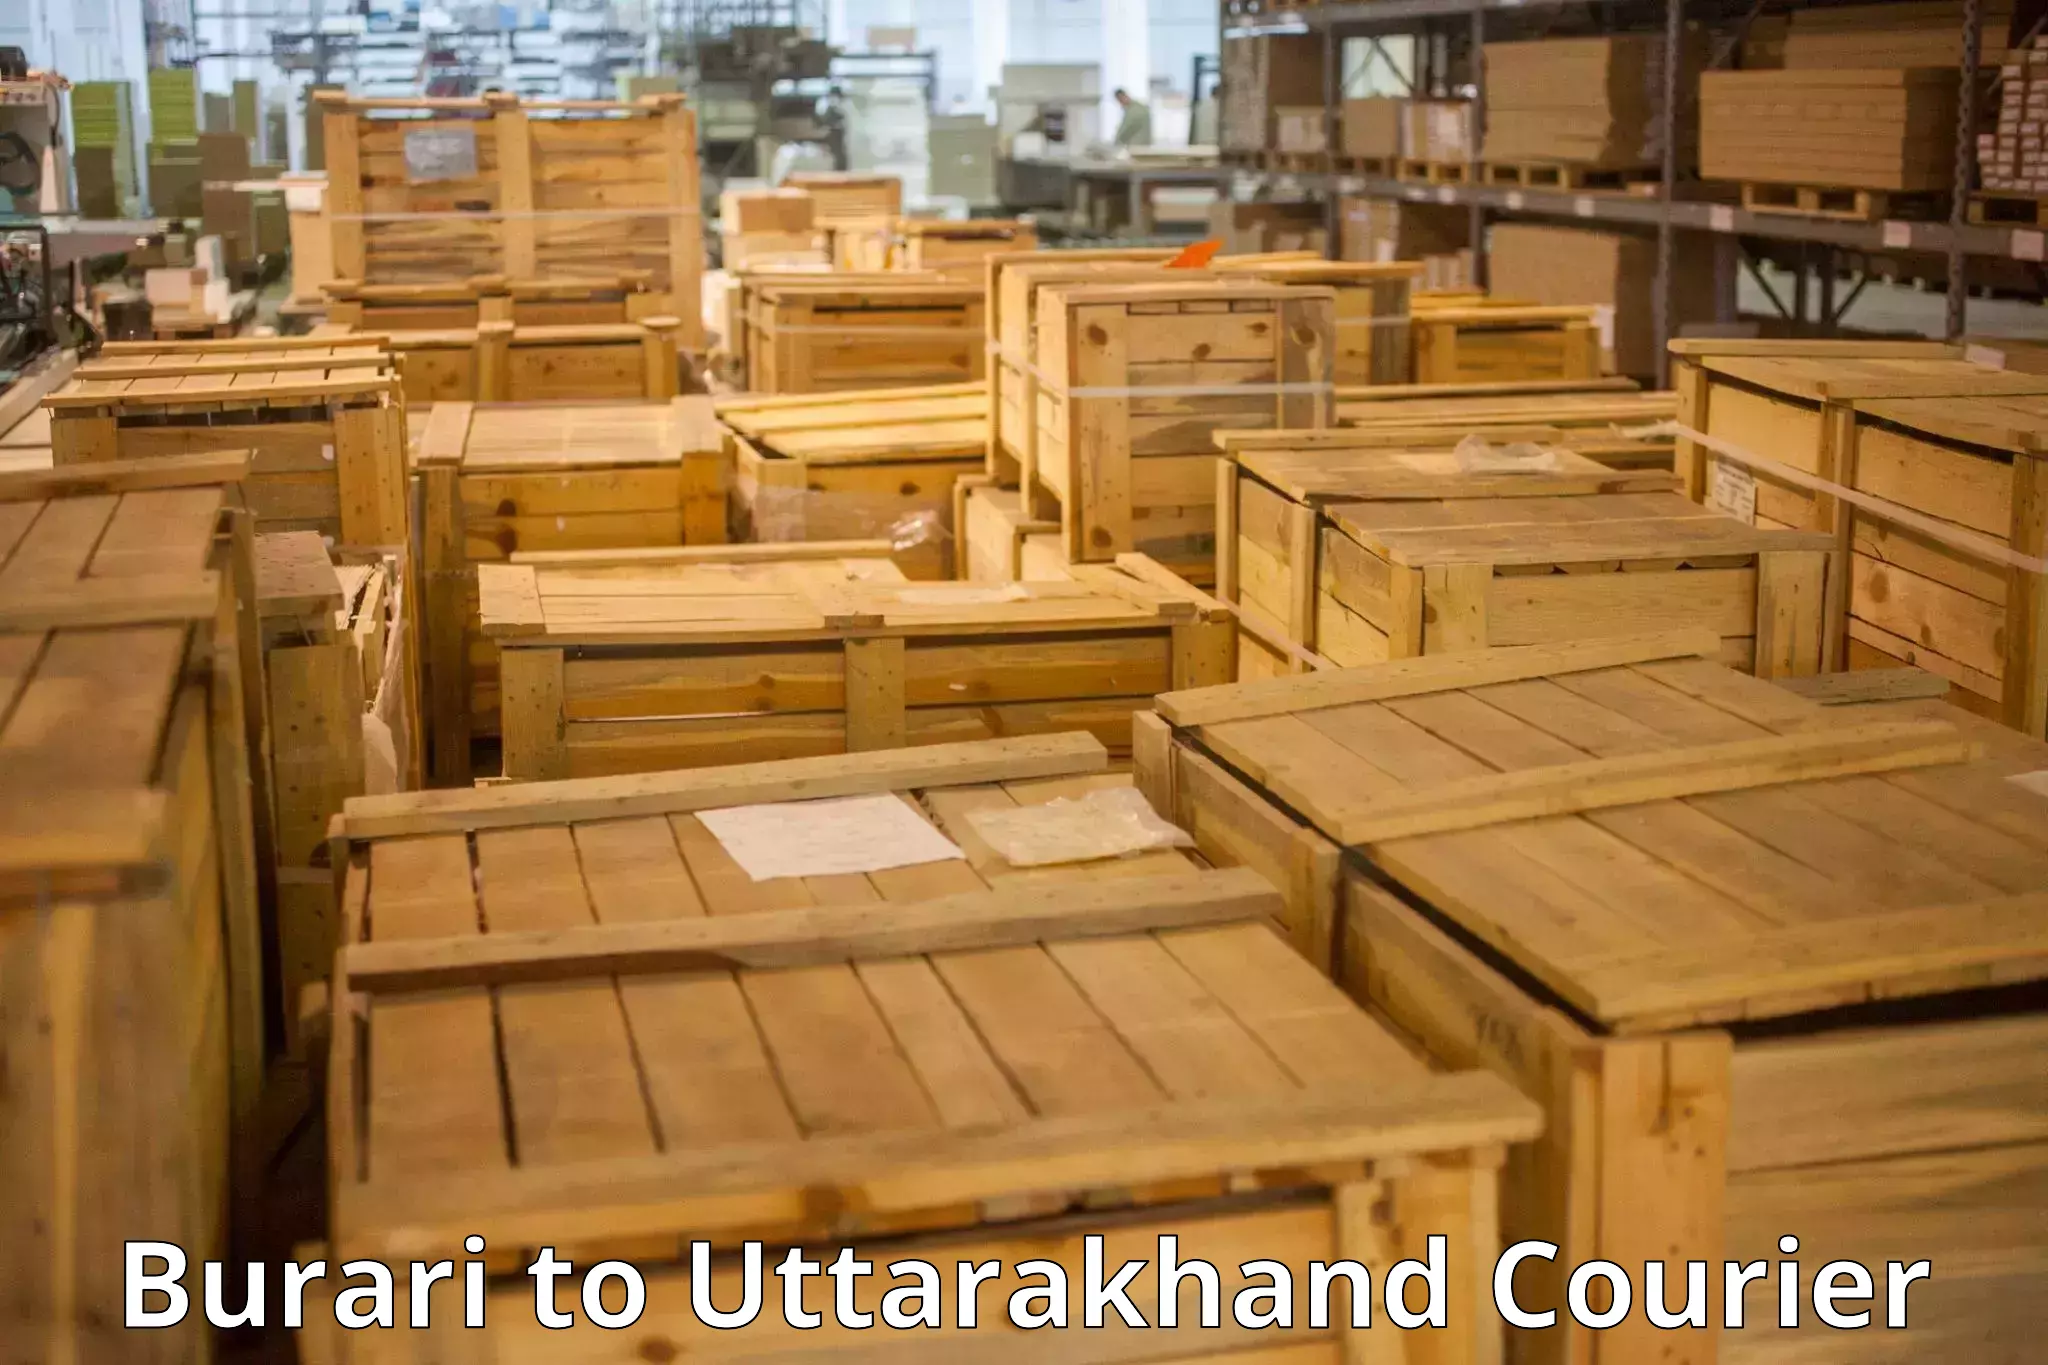 Luggage shipment processing Burari to Uttarkashi